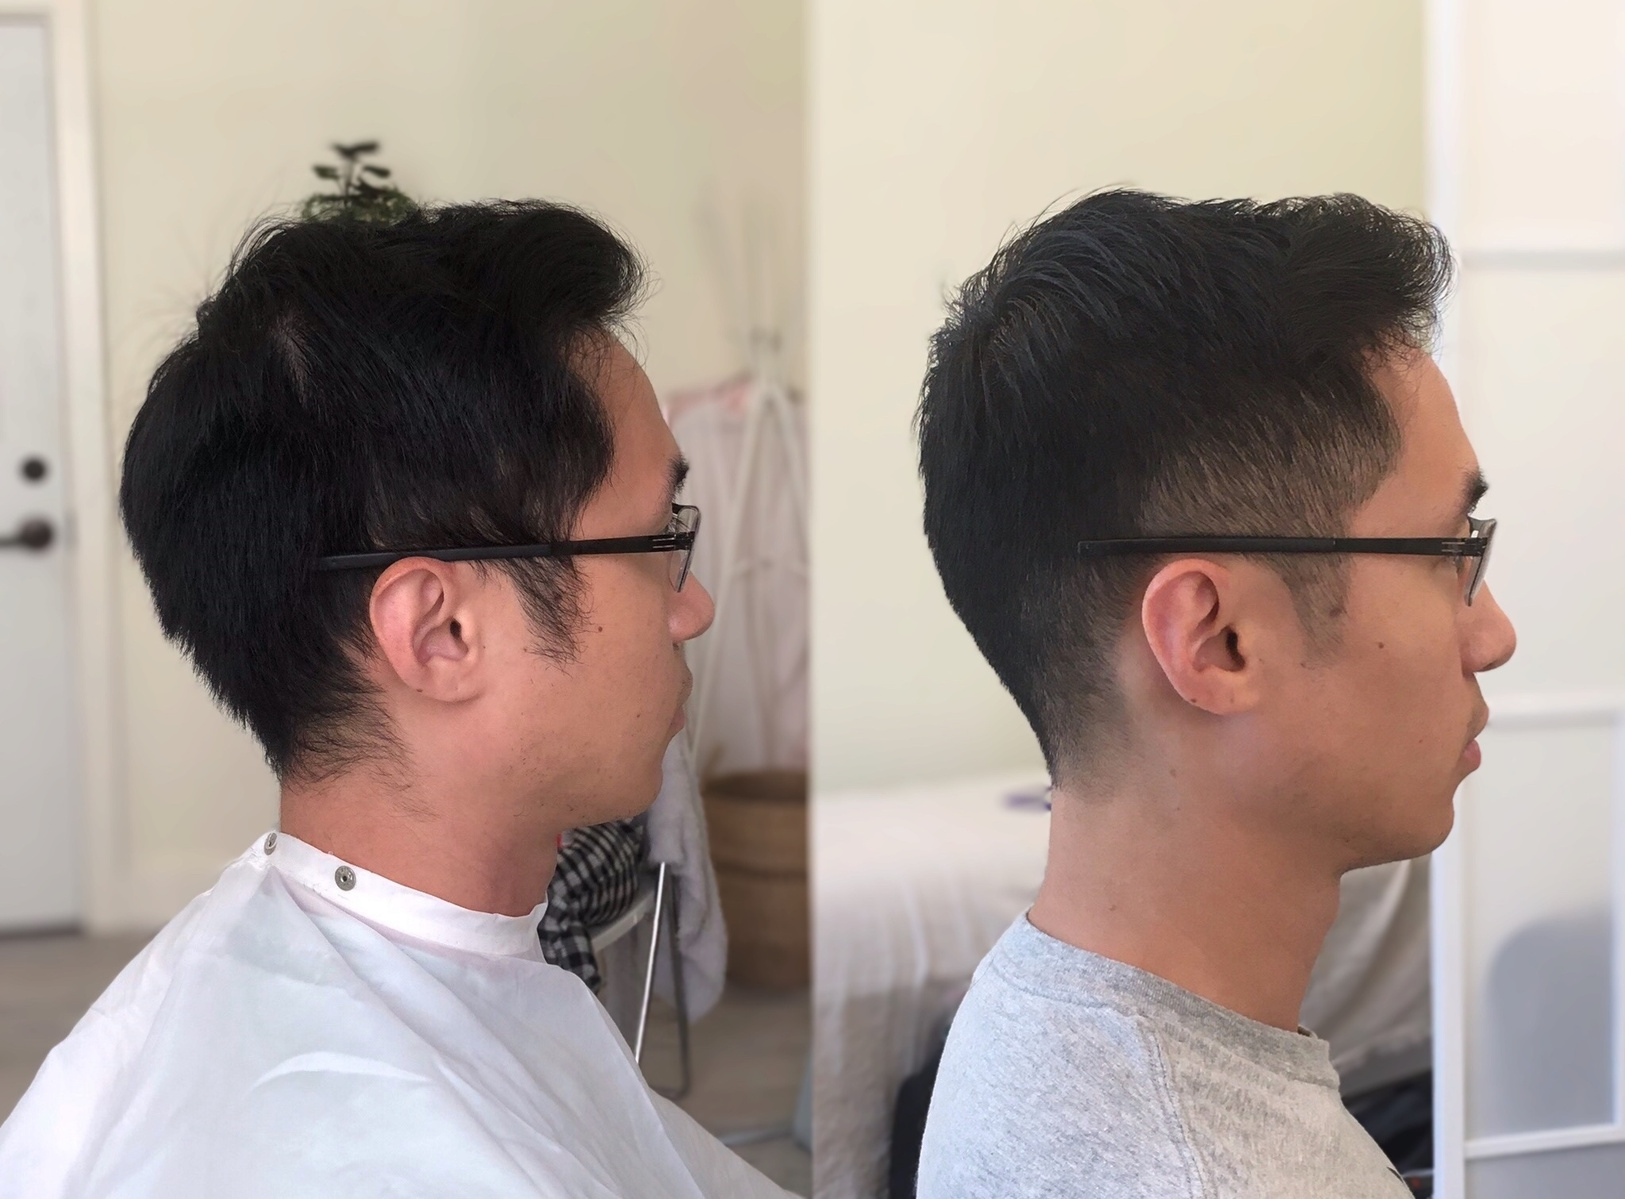 Asian men's haircut, fade into top.